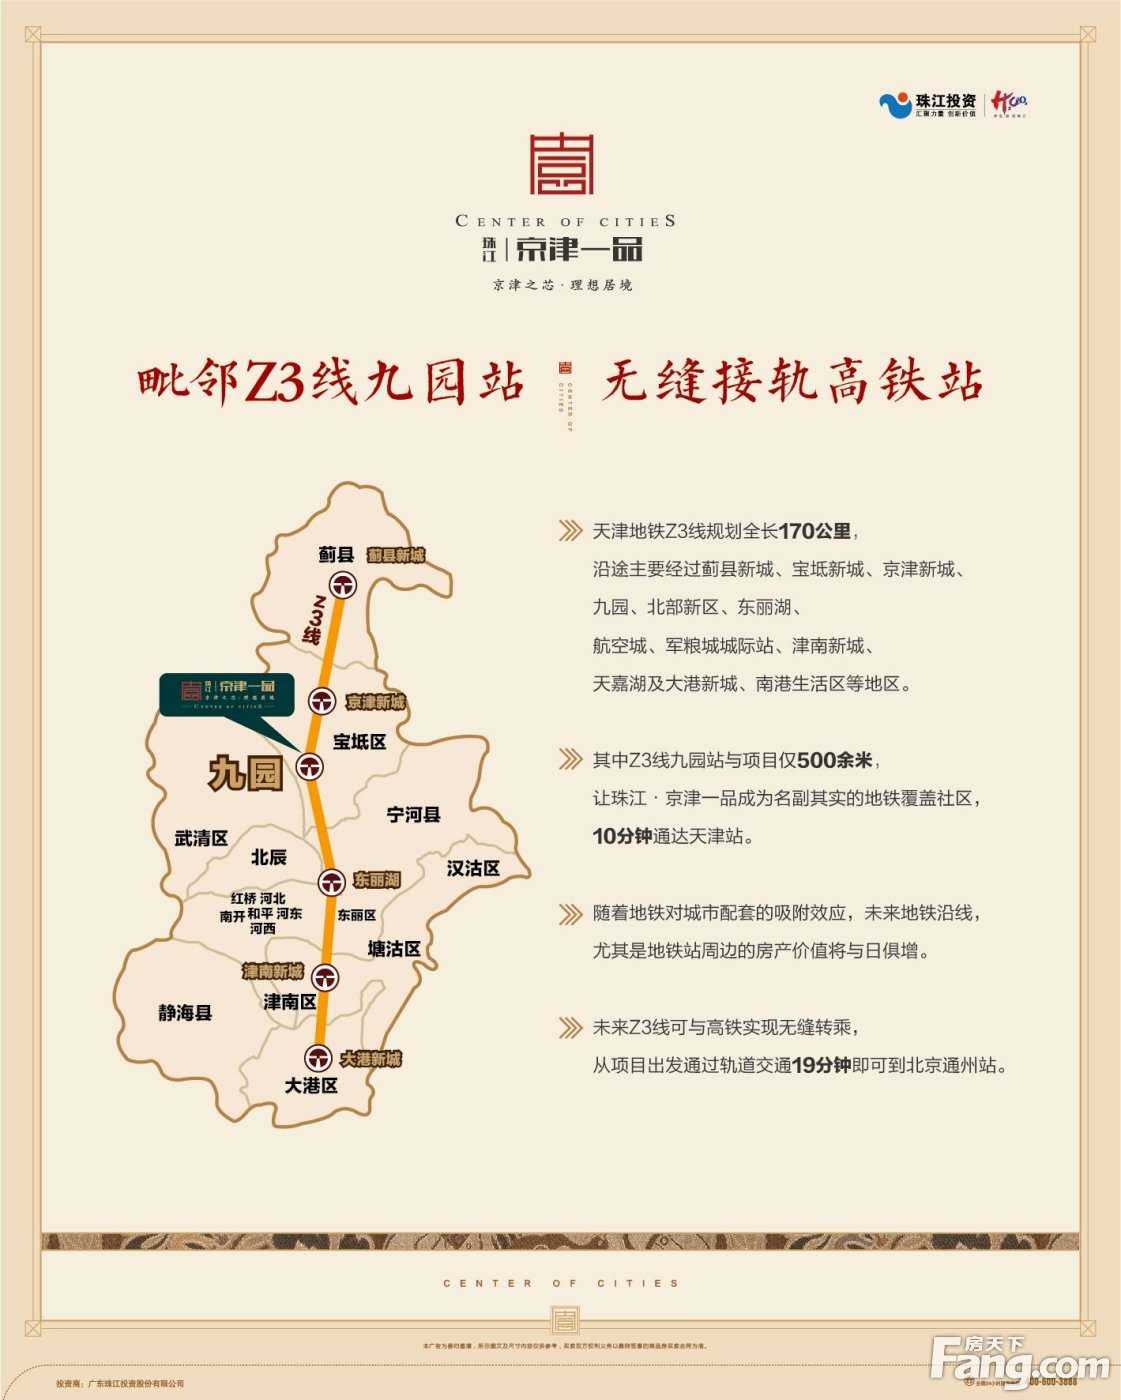 置业顾问陶文学发布了一条珠江·京津一品的抖房